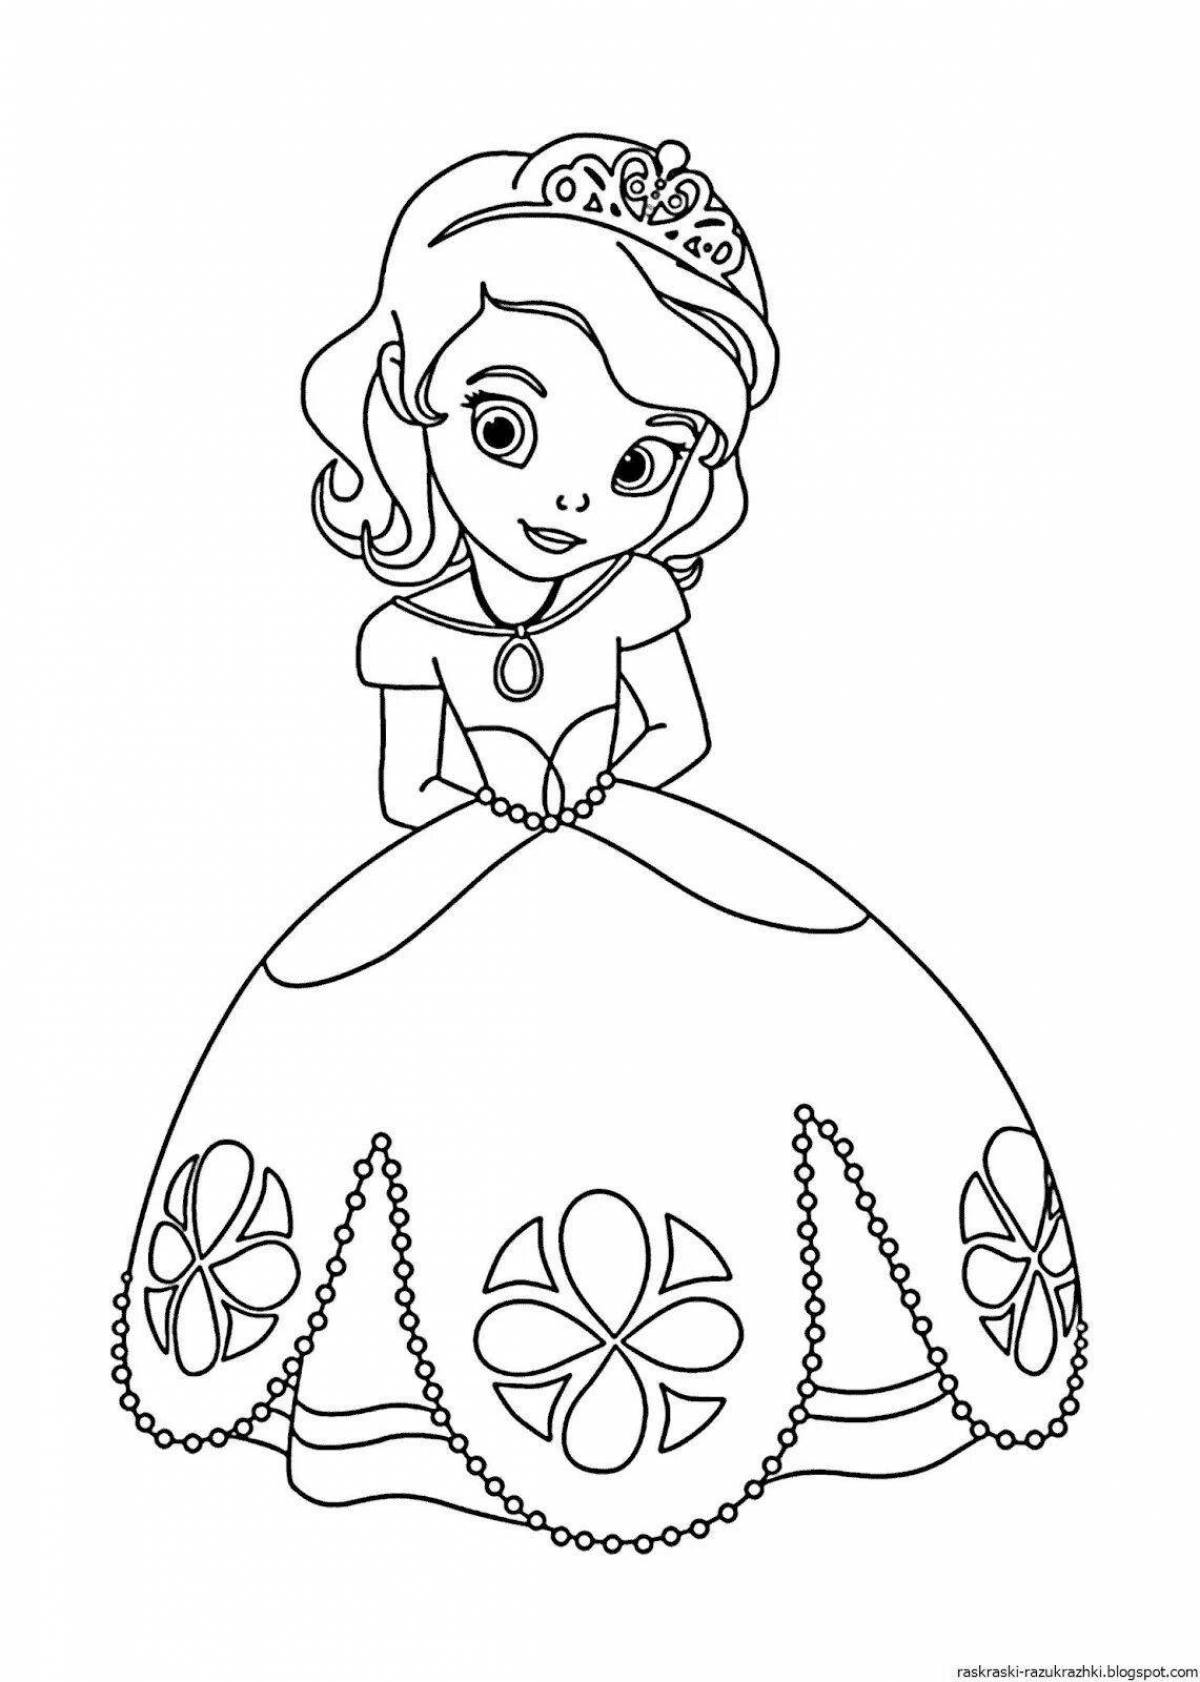 Мечтательная раскраска для детей 5-6 лет для девочек принцесса